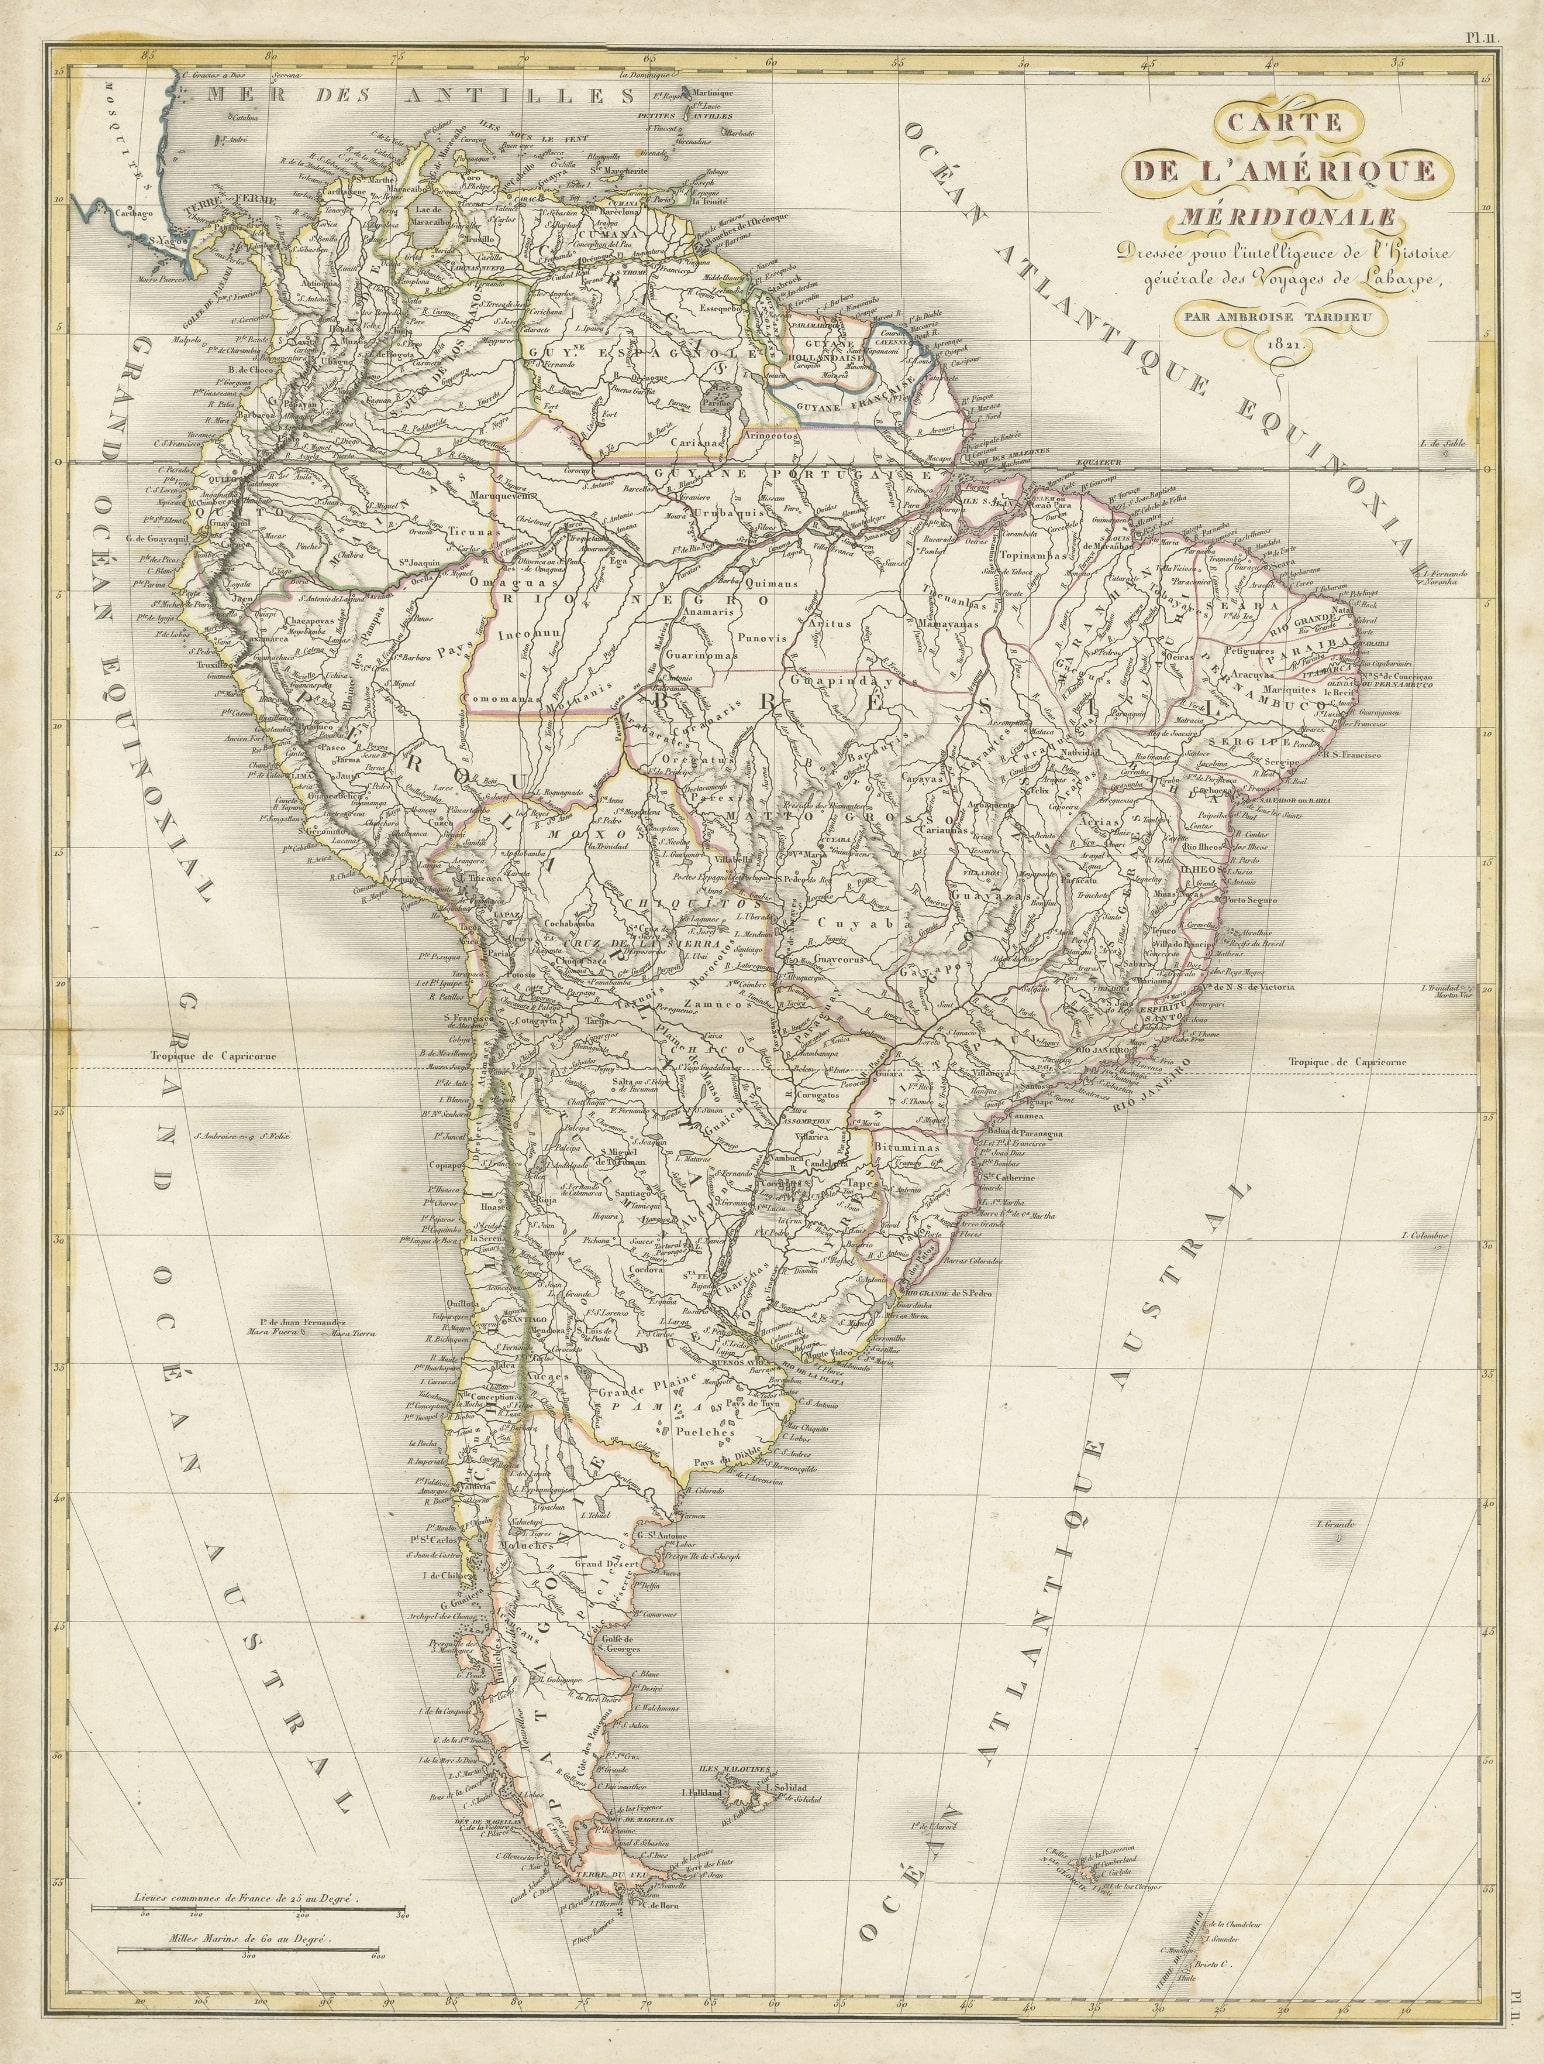 Antike Karte mit dem Titel 'Carte de l'Amérique Méridionale'. Seltene Karte von Südamerika, veröffentlicht in Paris im Jahr 1821. Die Karte zeigt den Kontinent inmitten einer jahrzehntelangen Revolution, die die geopolitische Landschaft und die